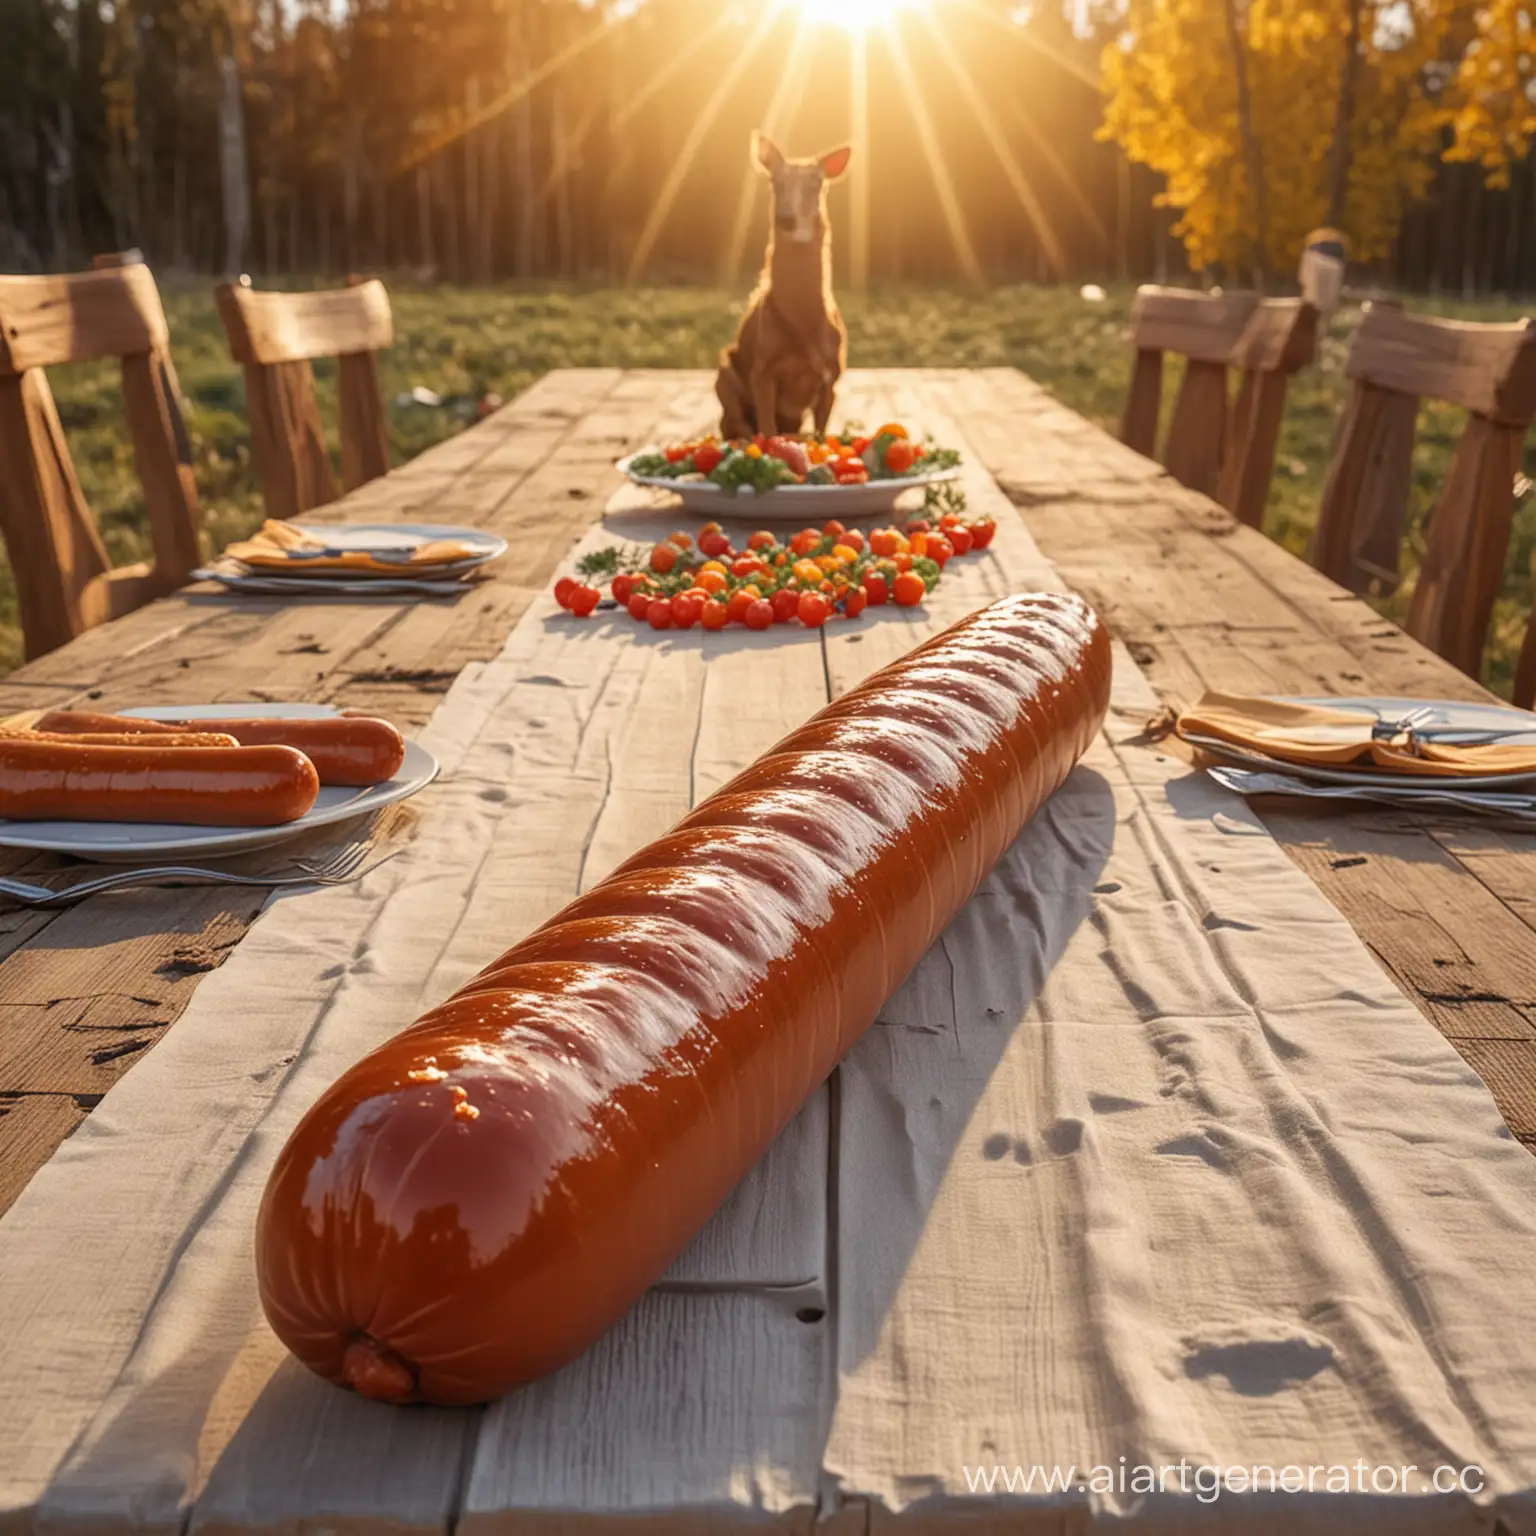  одна гигантская длинная колбаса лежит на длинном столе, на фоне чум, олени, праздник, солнце, радость